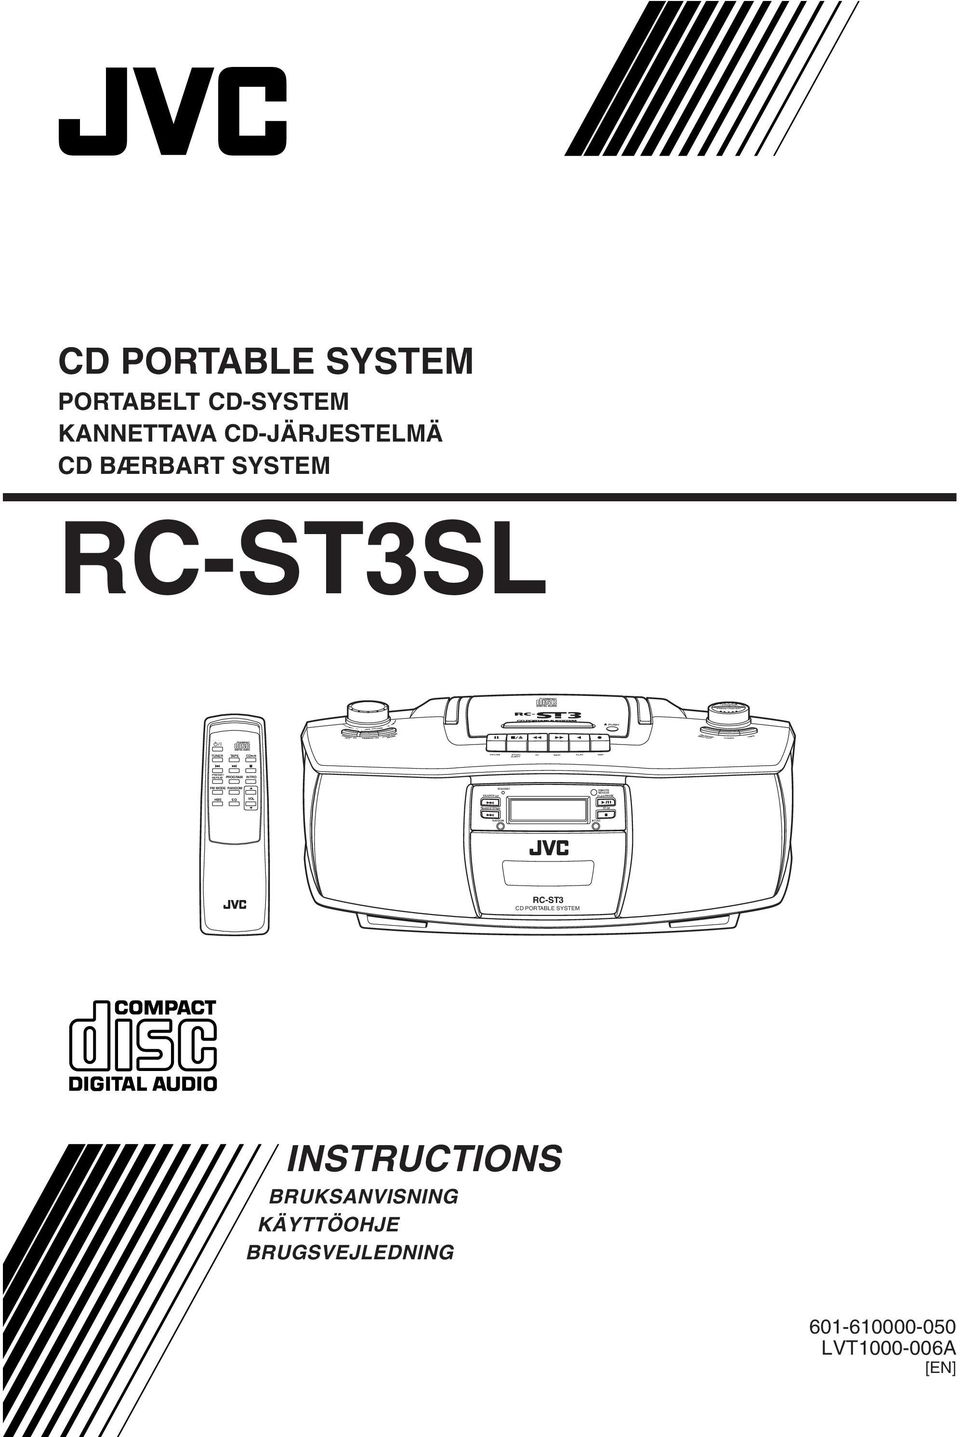 CD-JÄRJESTELMÄ CD BÆRBART SYSTEM RC-ST3SL RC-ST3 CD PORTABLE SYSTEM